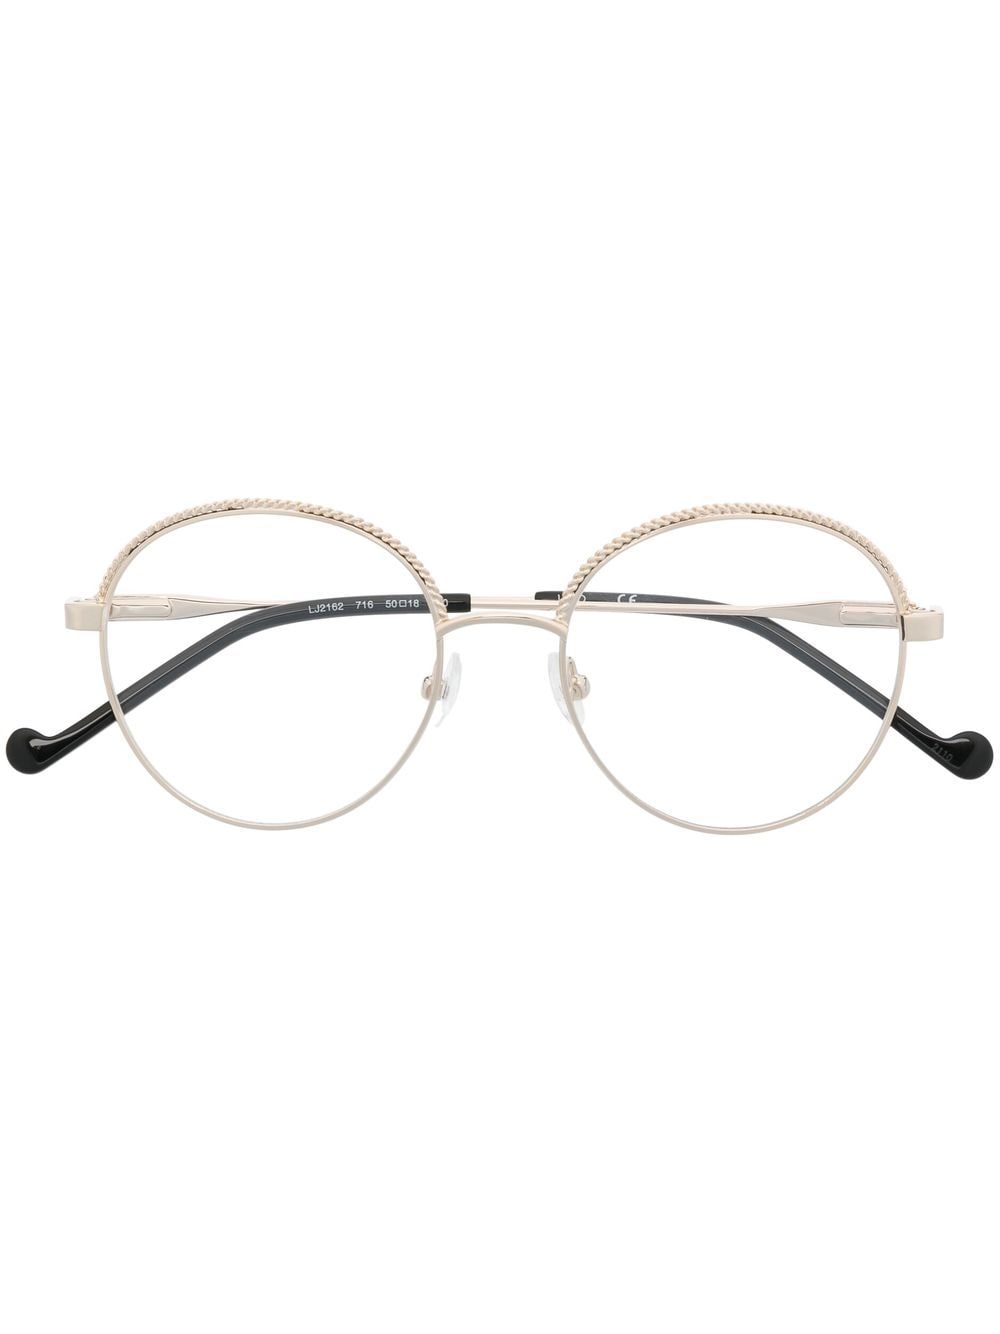 LIU JO beaded half-rim frame glasses - Gold von LIU JO